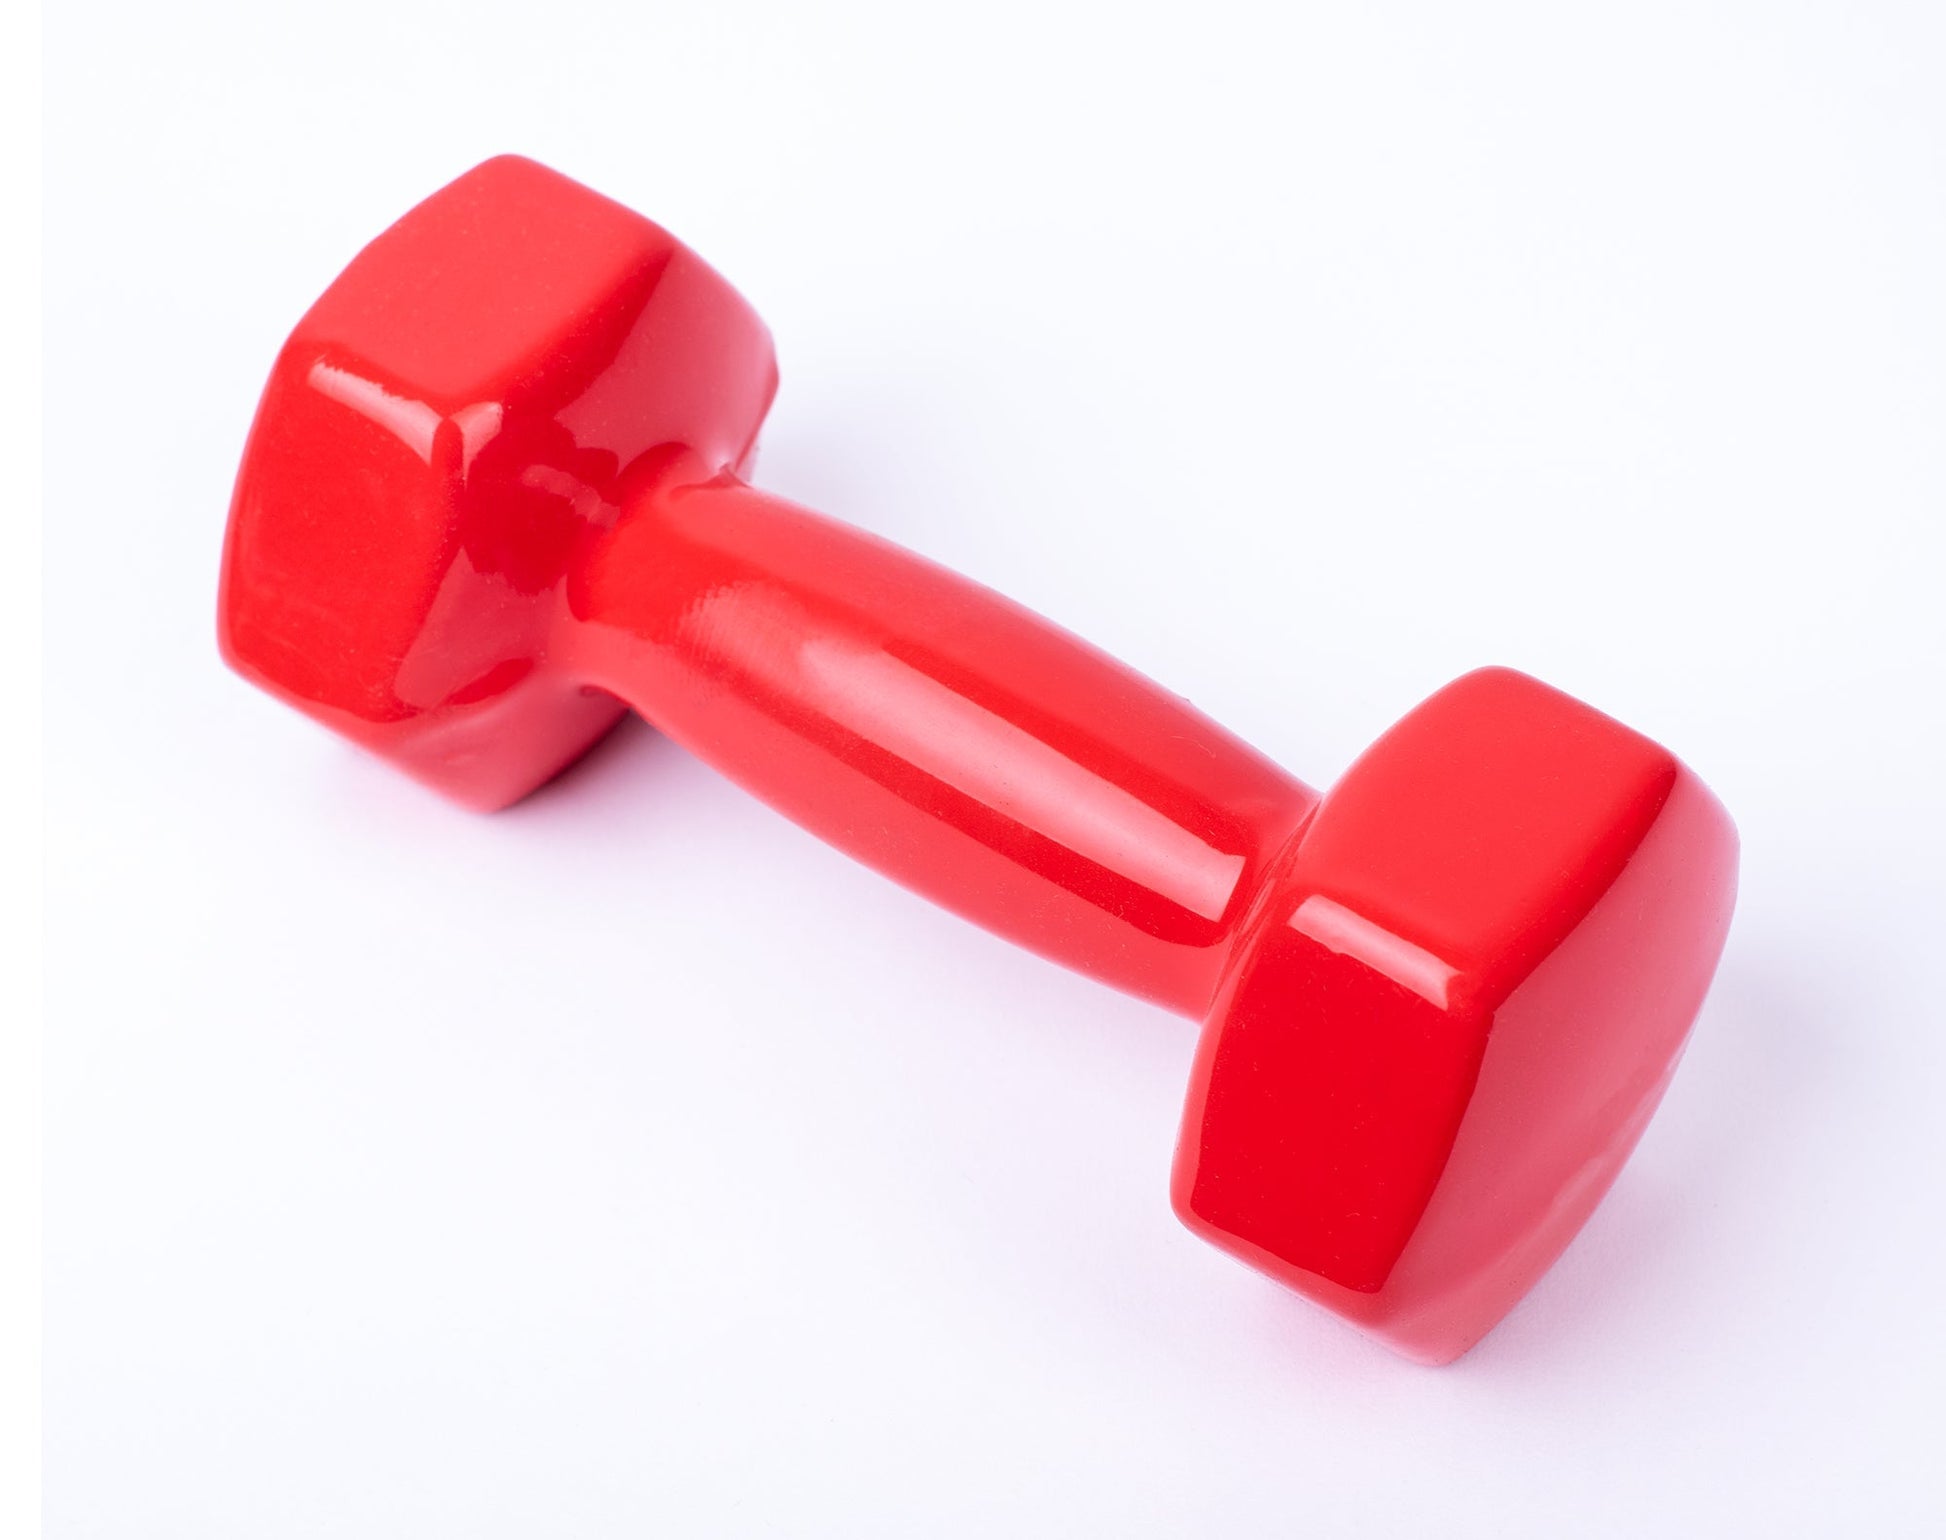 دامبل حديد للتمارين الرياضية بطبقة من الفينيل - لون احمر - قطعة واحدة - وزن 4 كيلو - Kanteen - كانتين